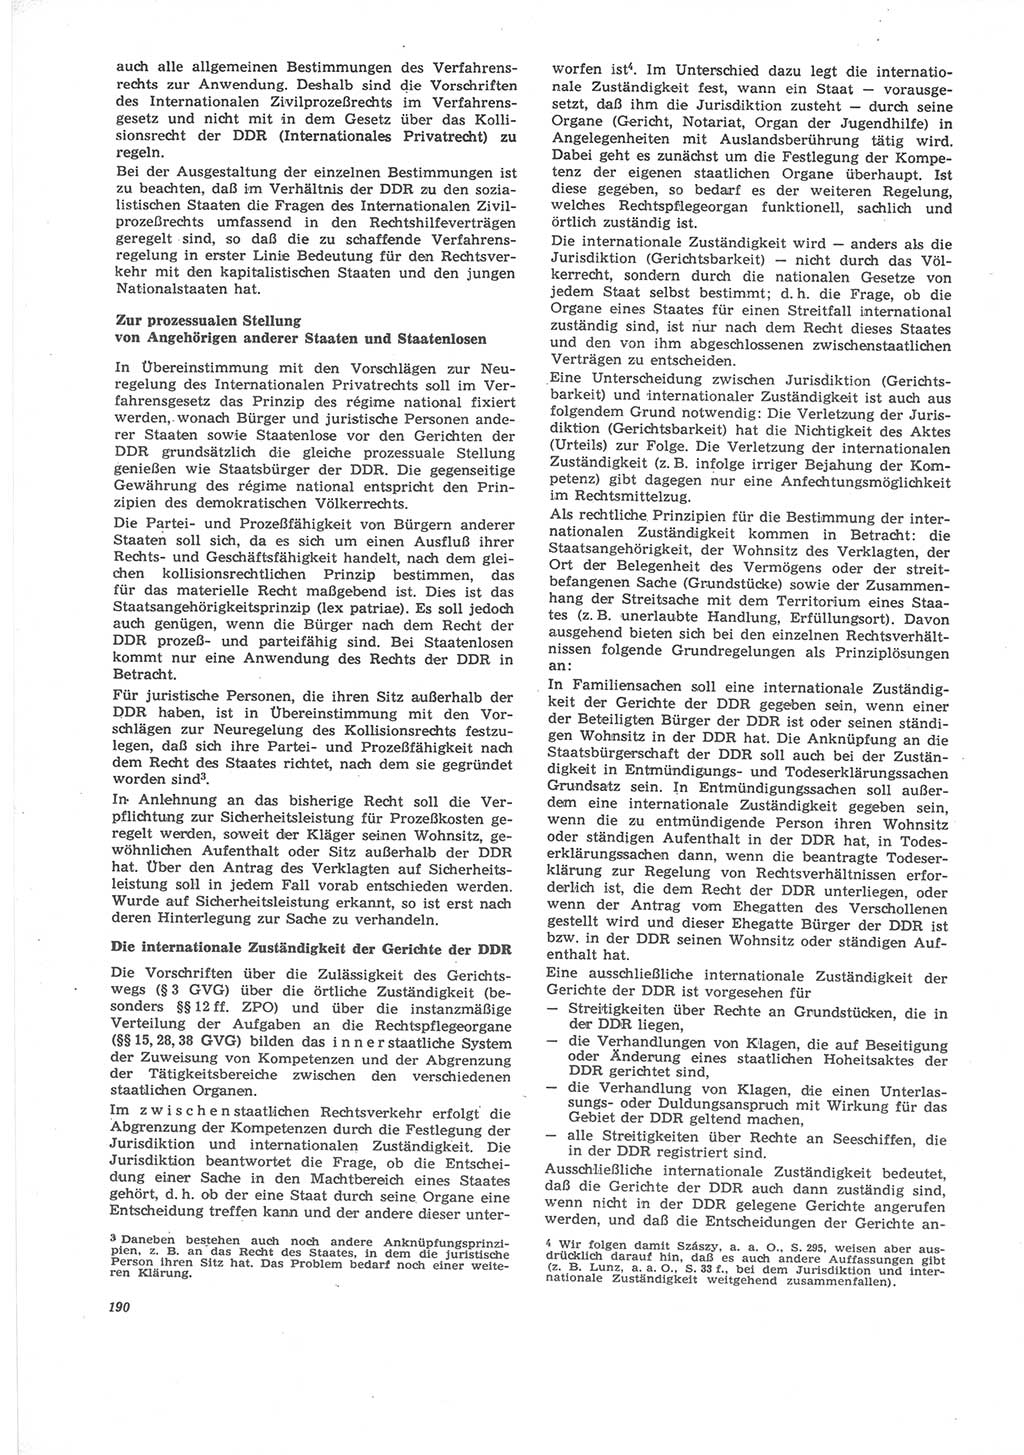 Neue Justiz (NJ), Zeitschrift für Recht und Rechtswissenschaft [Deutsche Demokratische Republik (DDR)], 24. Jahrgang 1970, Seite 190 (NJ DDR 1970, S. 190)